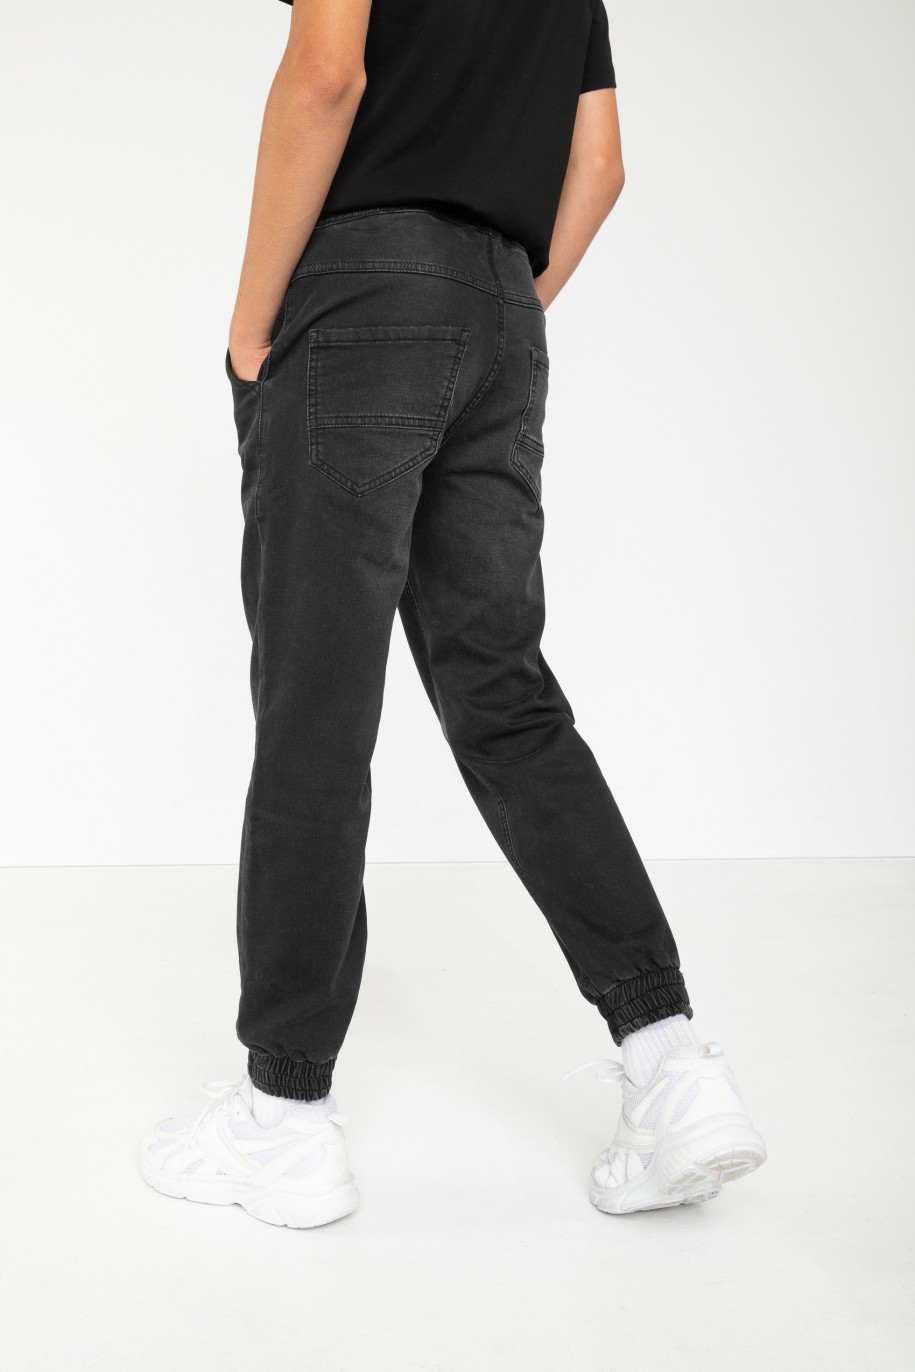 Czarne jeansowe spodnie joggery - 44517